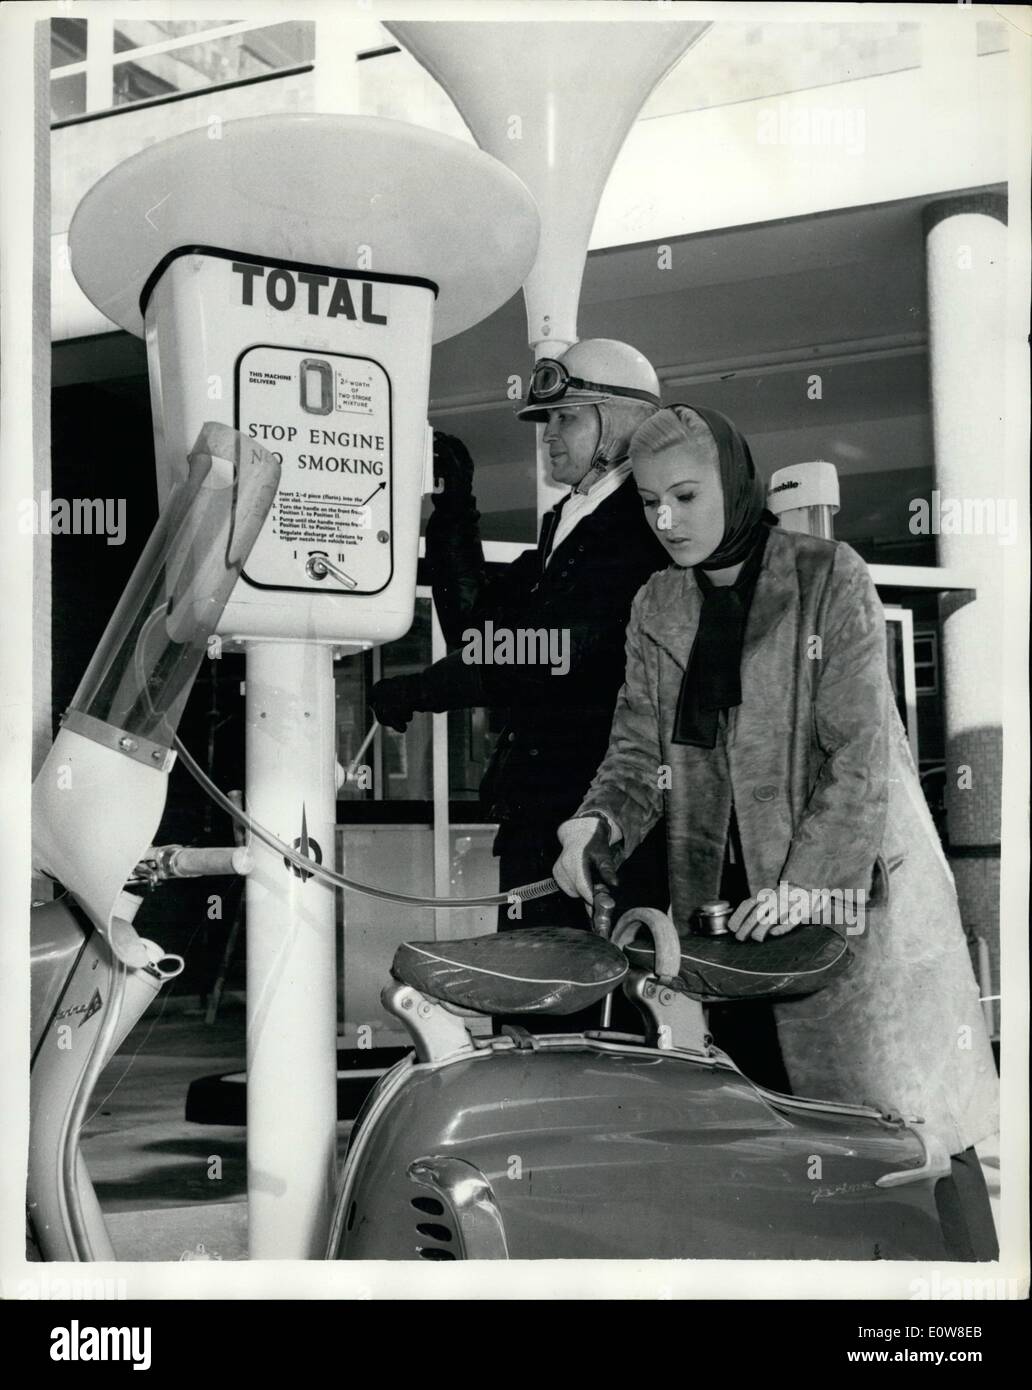 11 novembre 1961 - Service de la pompe à essence : Pour la première fois à Londres à la nouvelle station service Total près de Southwark Bridge, un service d'auto-pompe produit ''help-yourself'' petroil mélange pour cyclomoteurs et scooters. Les utilisateurs insèrent un deux-pièces shilling, tourner une poignée, ce qui pompe le carburant mélangé dans un récipient sur le distributeur. Trois pintes sont obtenues pour 2s. La photo montre l'un des premiers clients d'utiliser la nouvelle pompe aujourd'hui, John, Ebbrell de Muswell Hill, insère son argent, alors que Jenny modèle Howard, de Kingston, met le nozzele la pompe dans le réservoir Banque D'Images